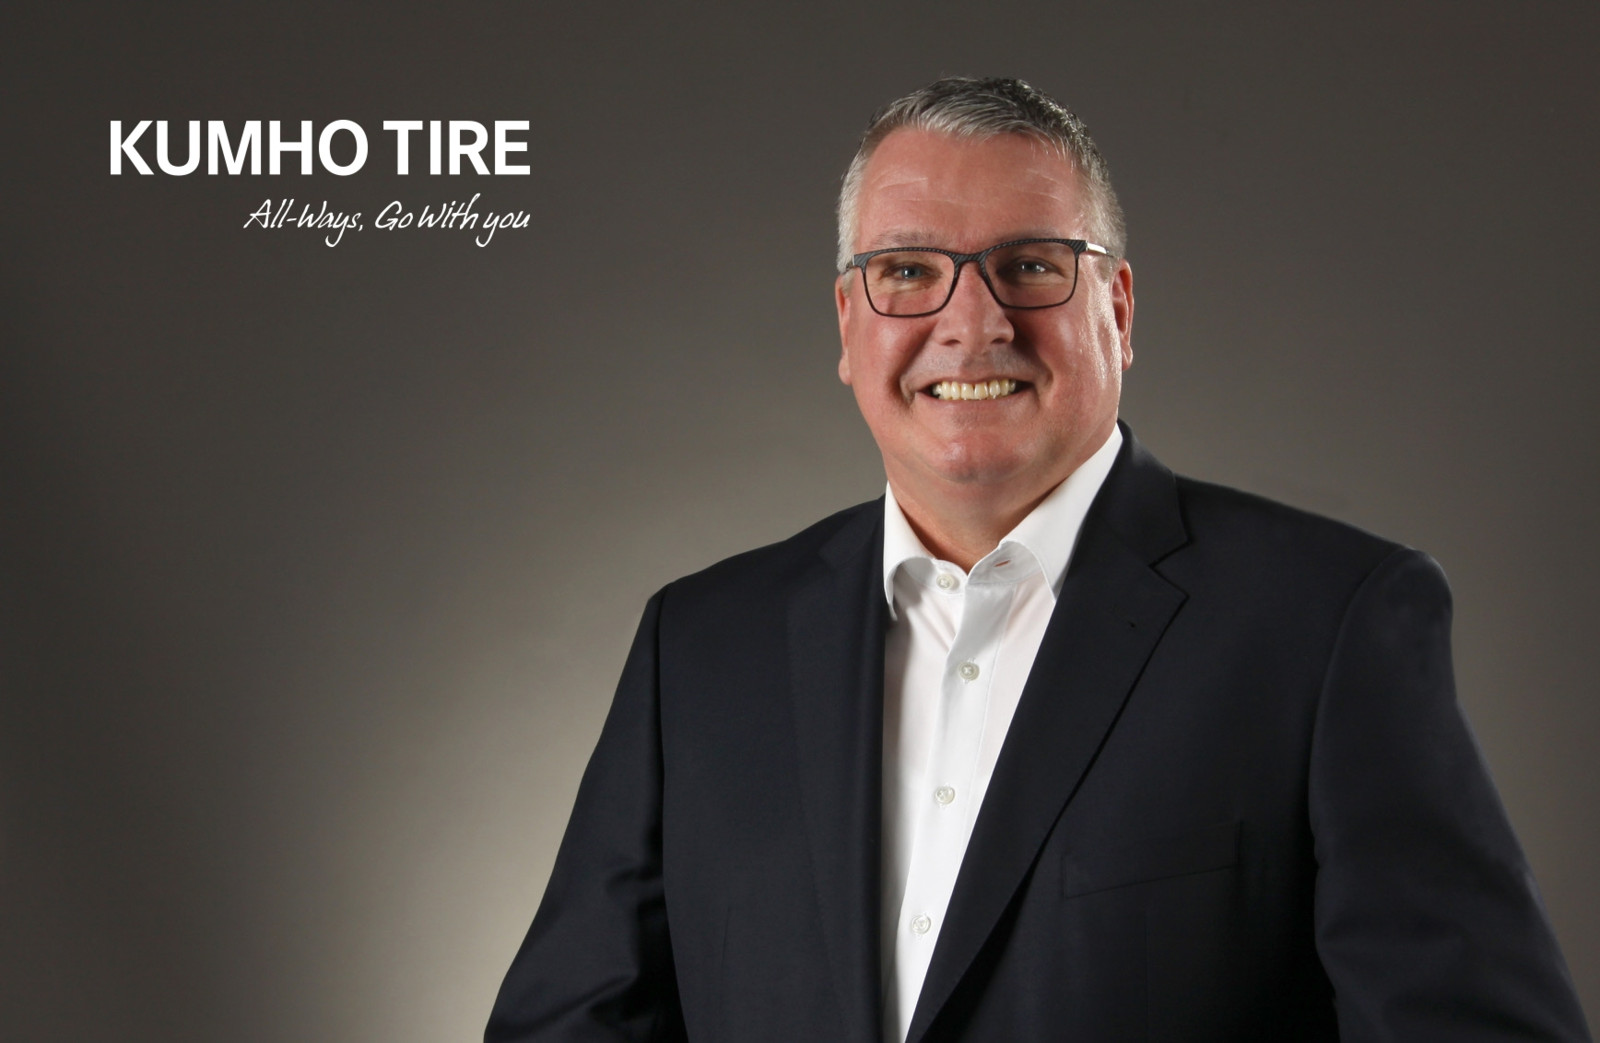 Der 53-jährige Ralf Stein unterstützt ab Mitte des Jahres den Vertrieb von Kumho Tire Europe GmbH im Gebiet Nord/Ost.